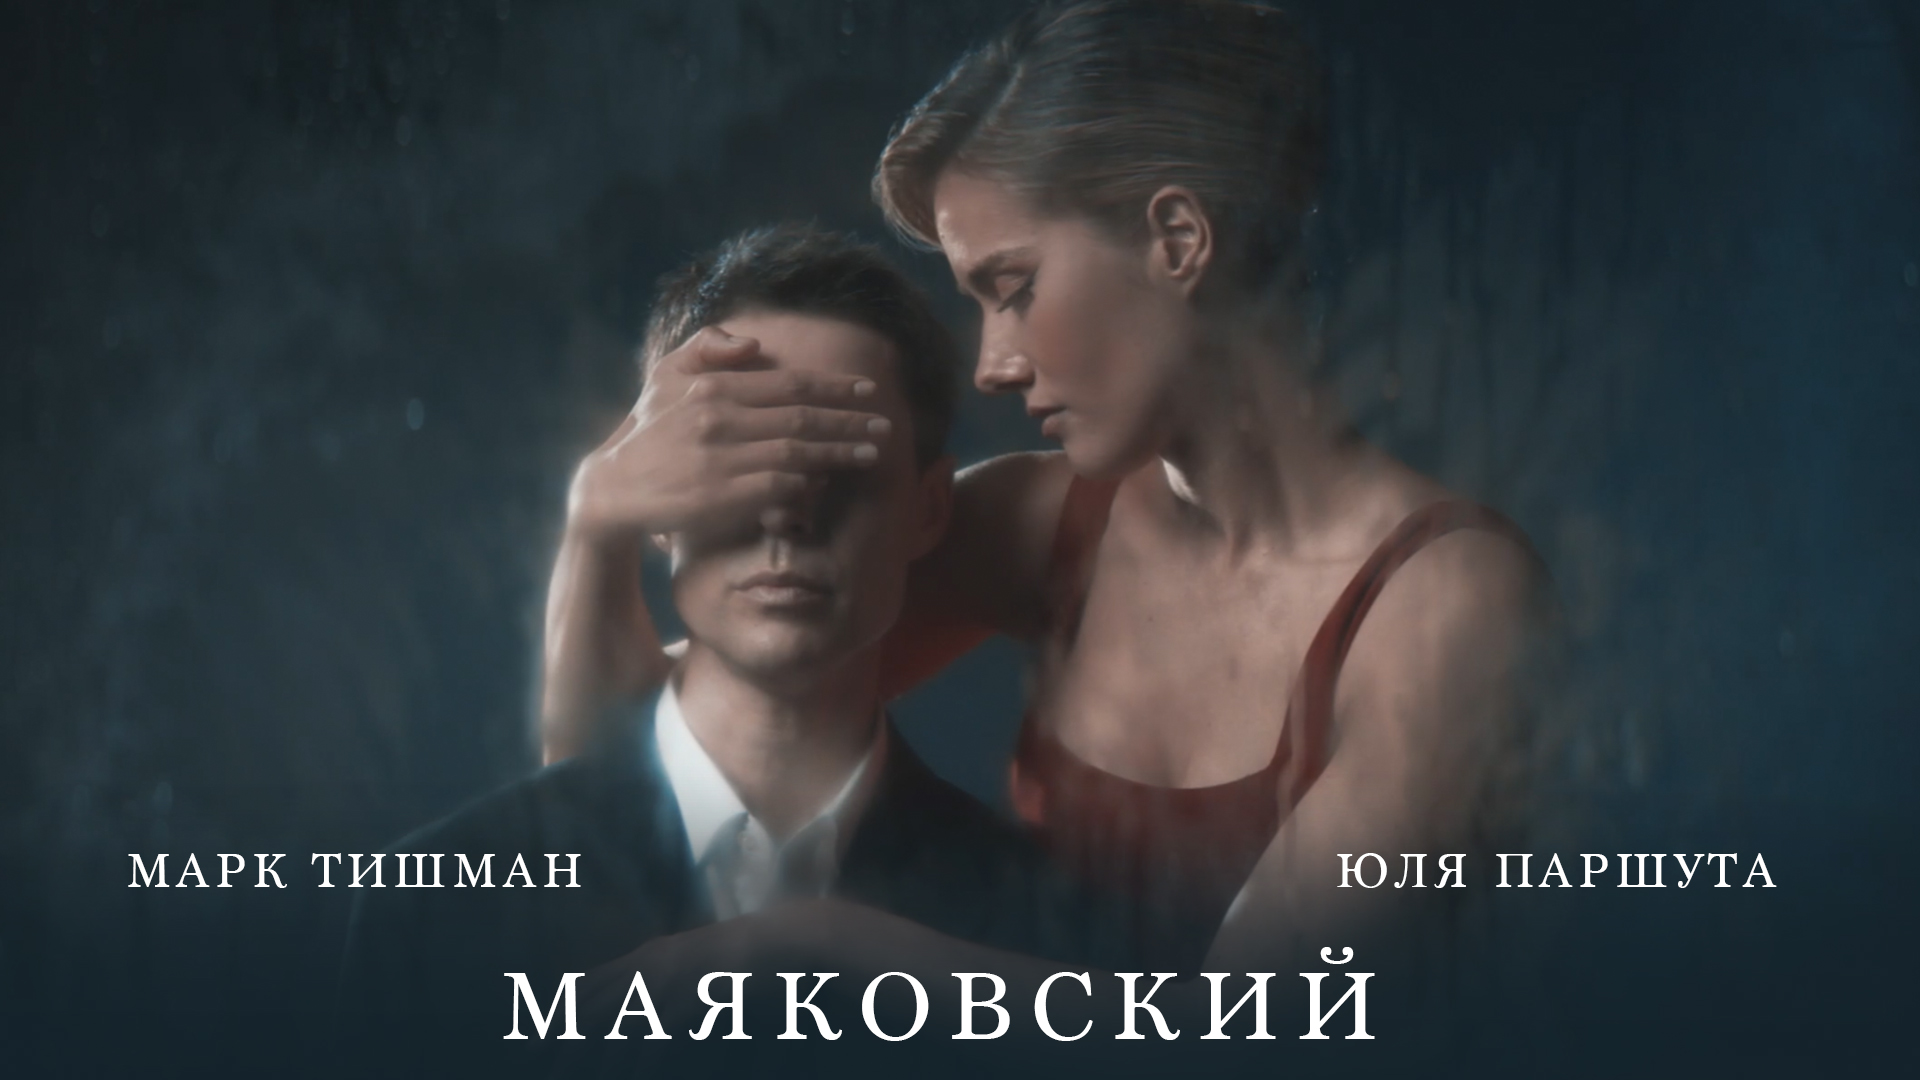 Юля Паршута, Марк Тишман - Маяковский (премьера клипа, 2022)